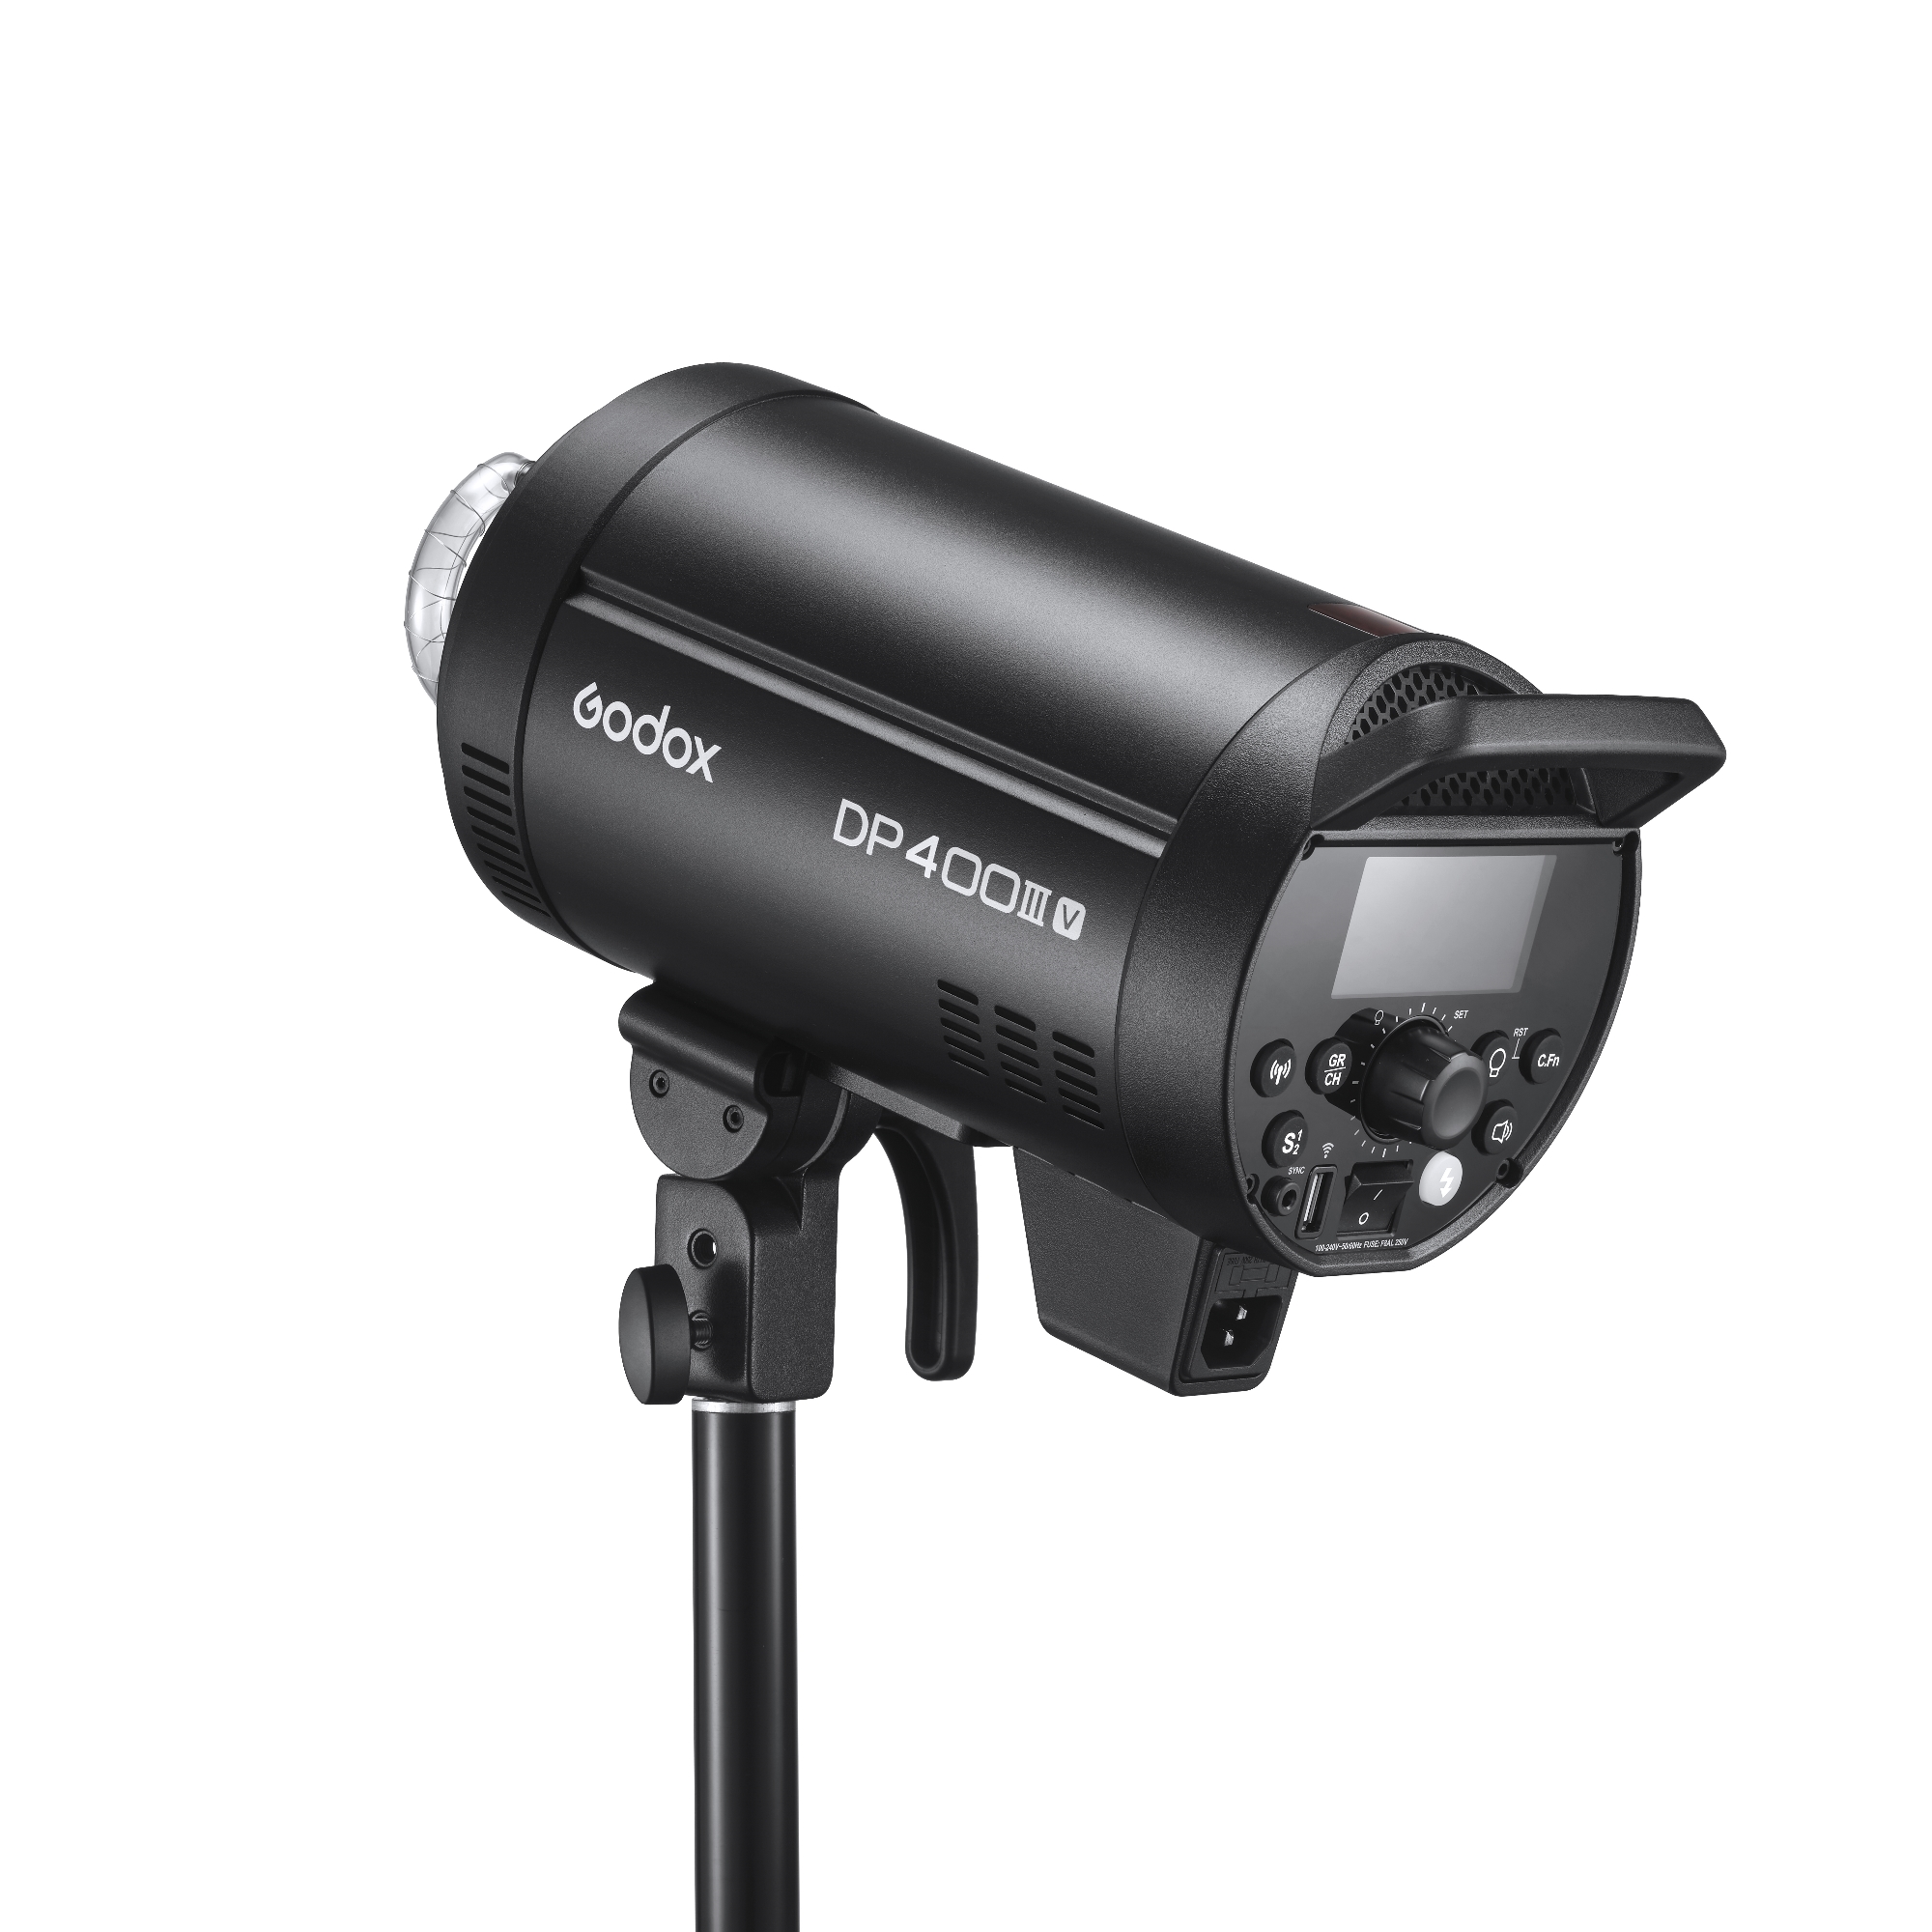    Godox DP400IIIV   Ultra-mart